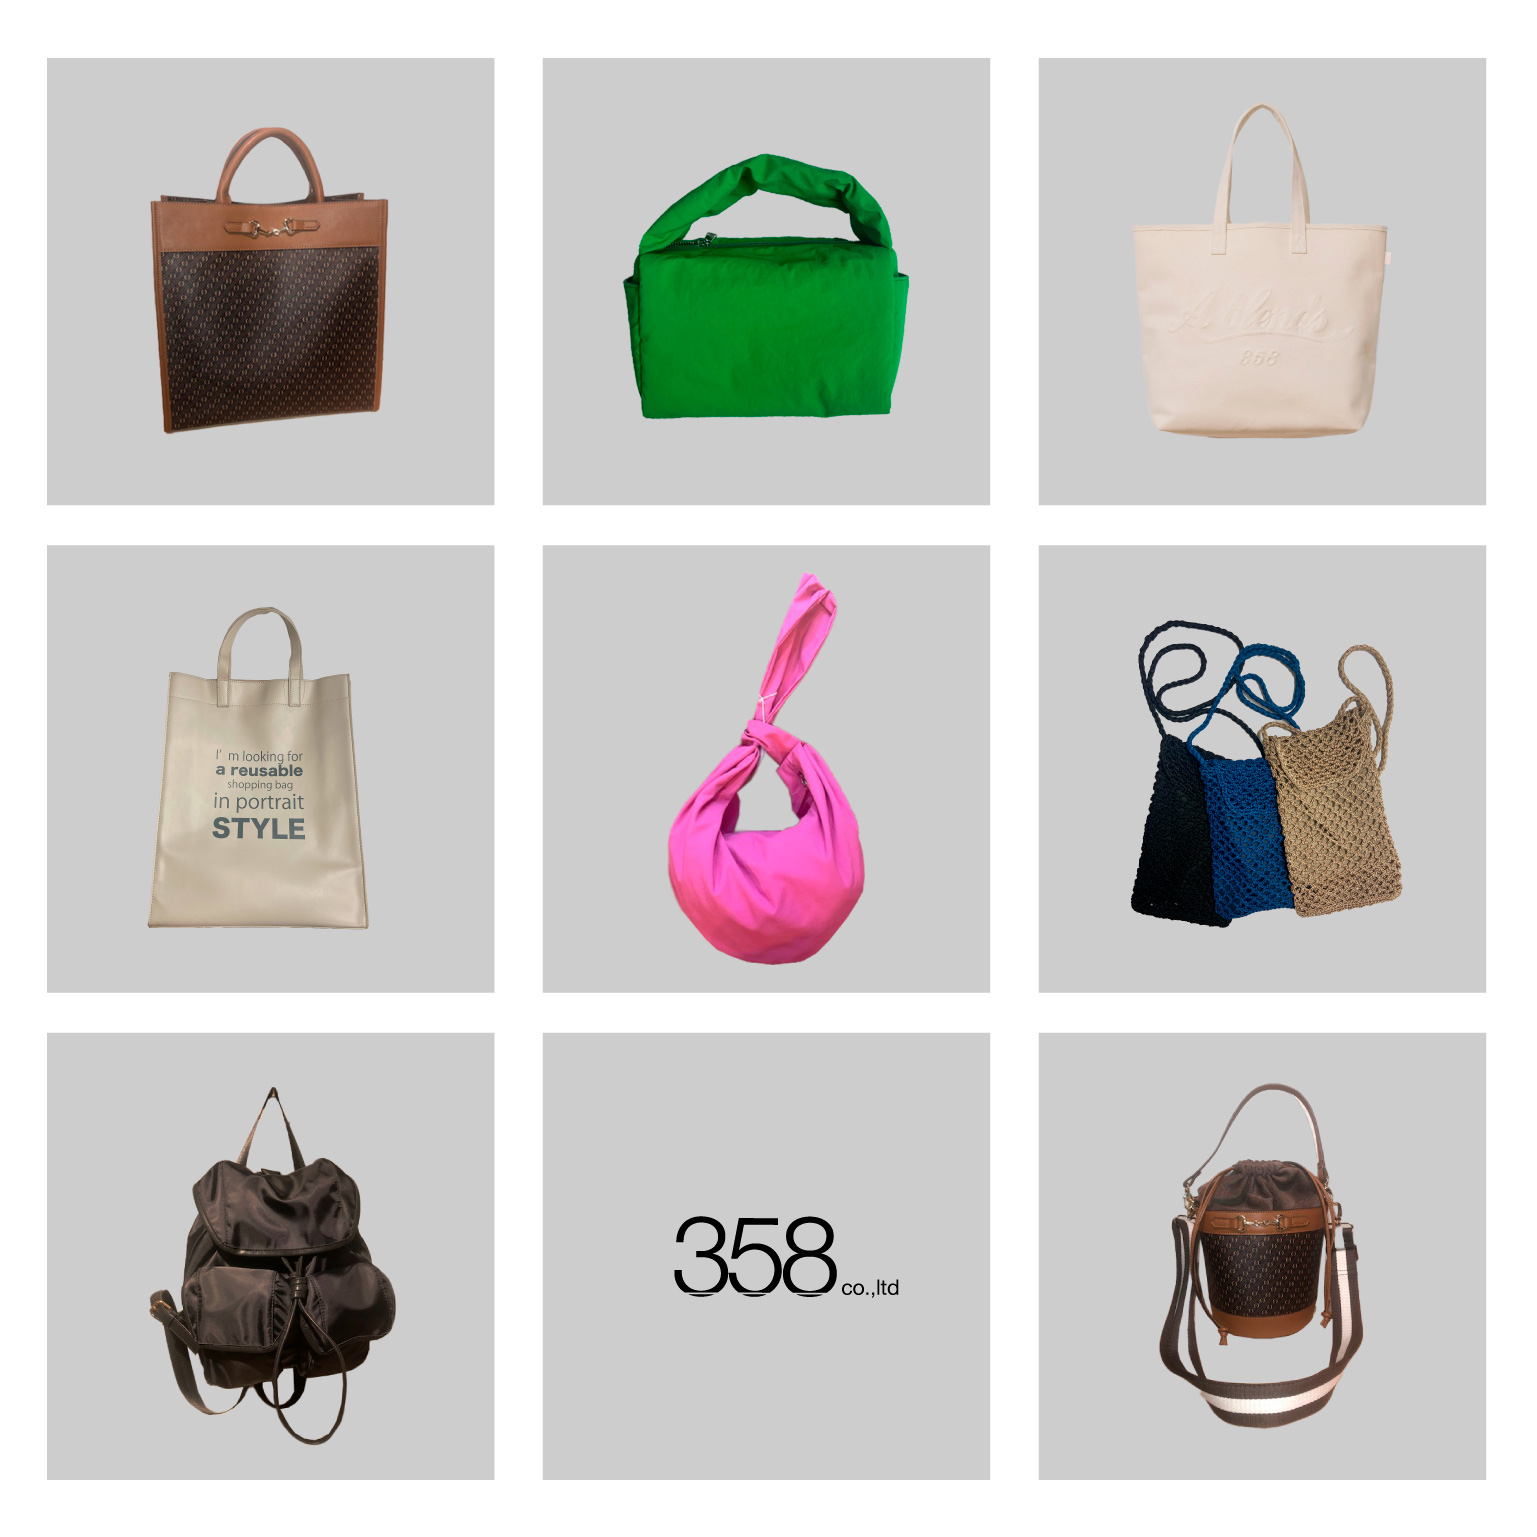 合成皮革のバッグを中心に、様々な素材のバッグから小物まで幅広く対応する東京・中目黒の企業様